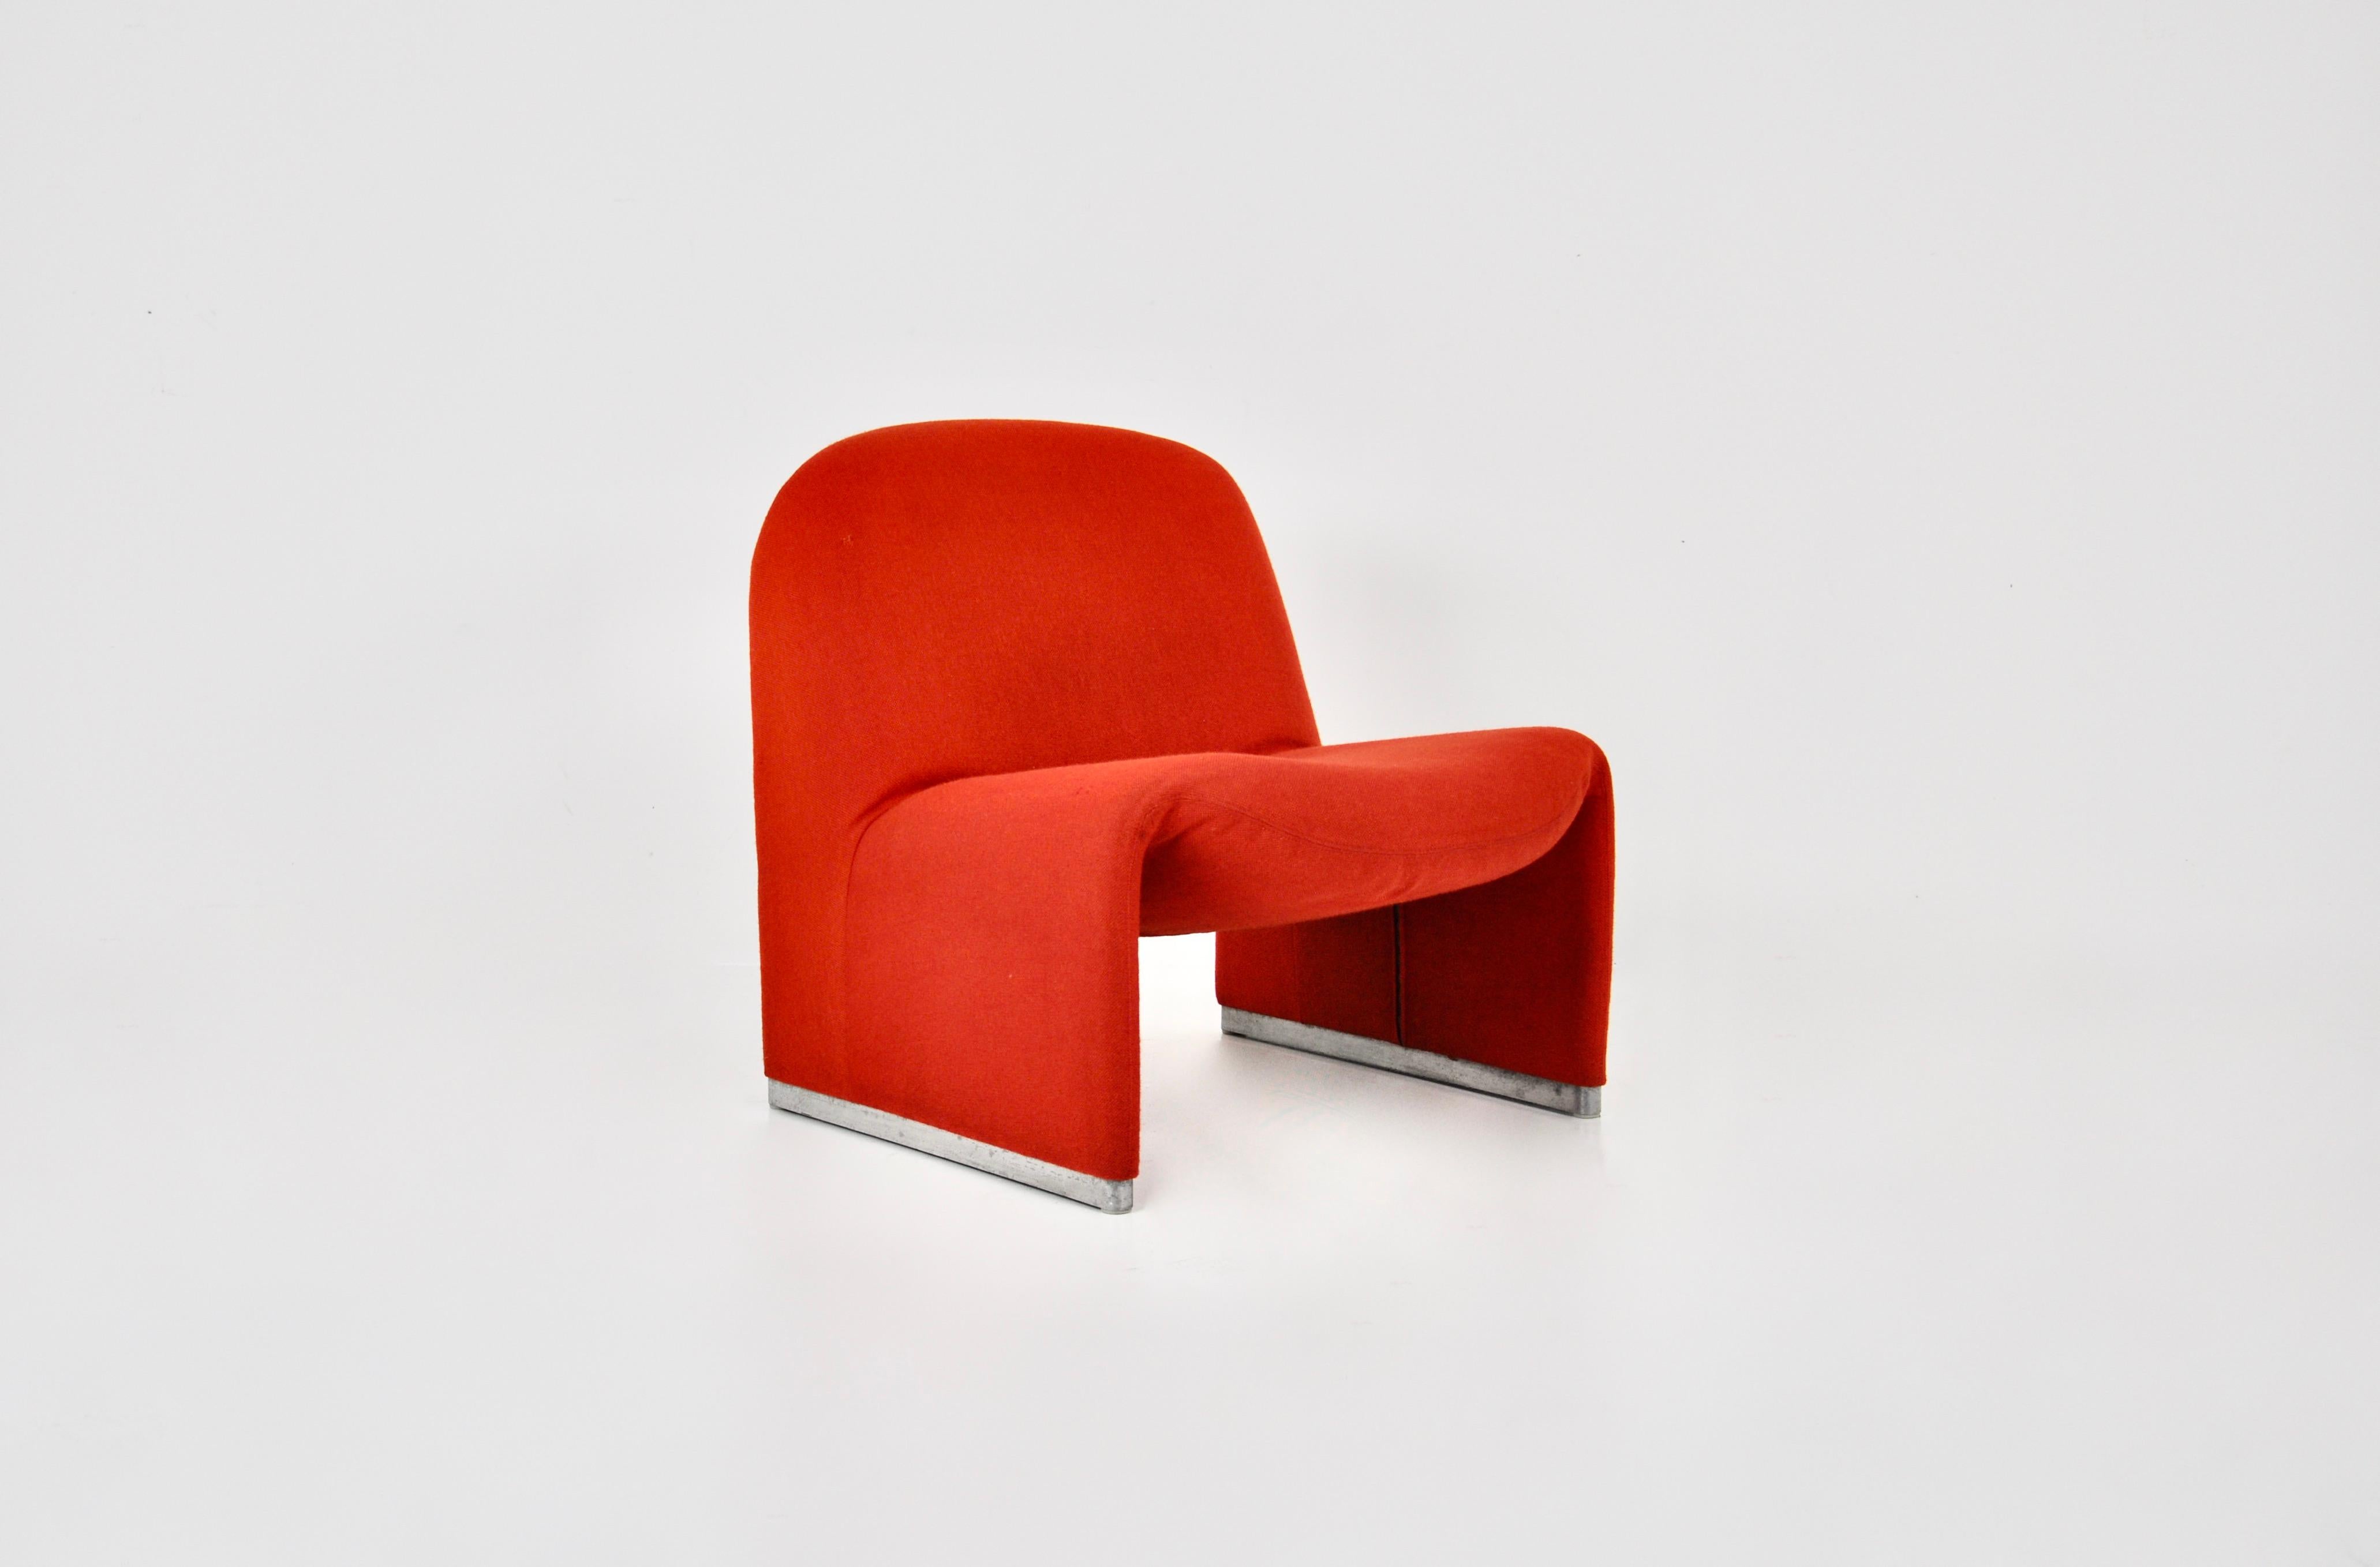 Sessel aus rotem Stoff.  Modell: Alky. Sitzhöhe: 39 cm. Zeit- und altersbedingte Abnutzung.